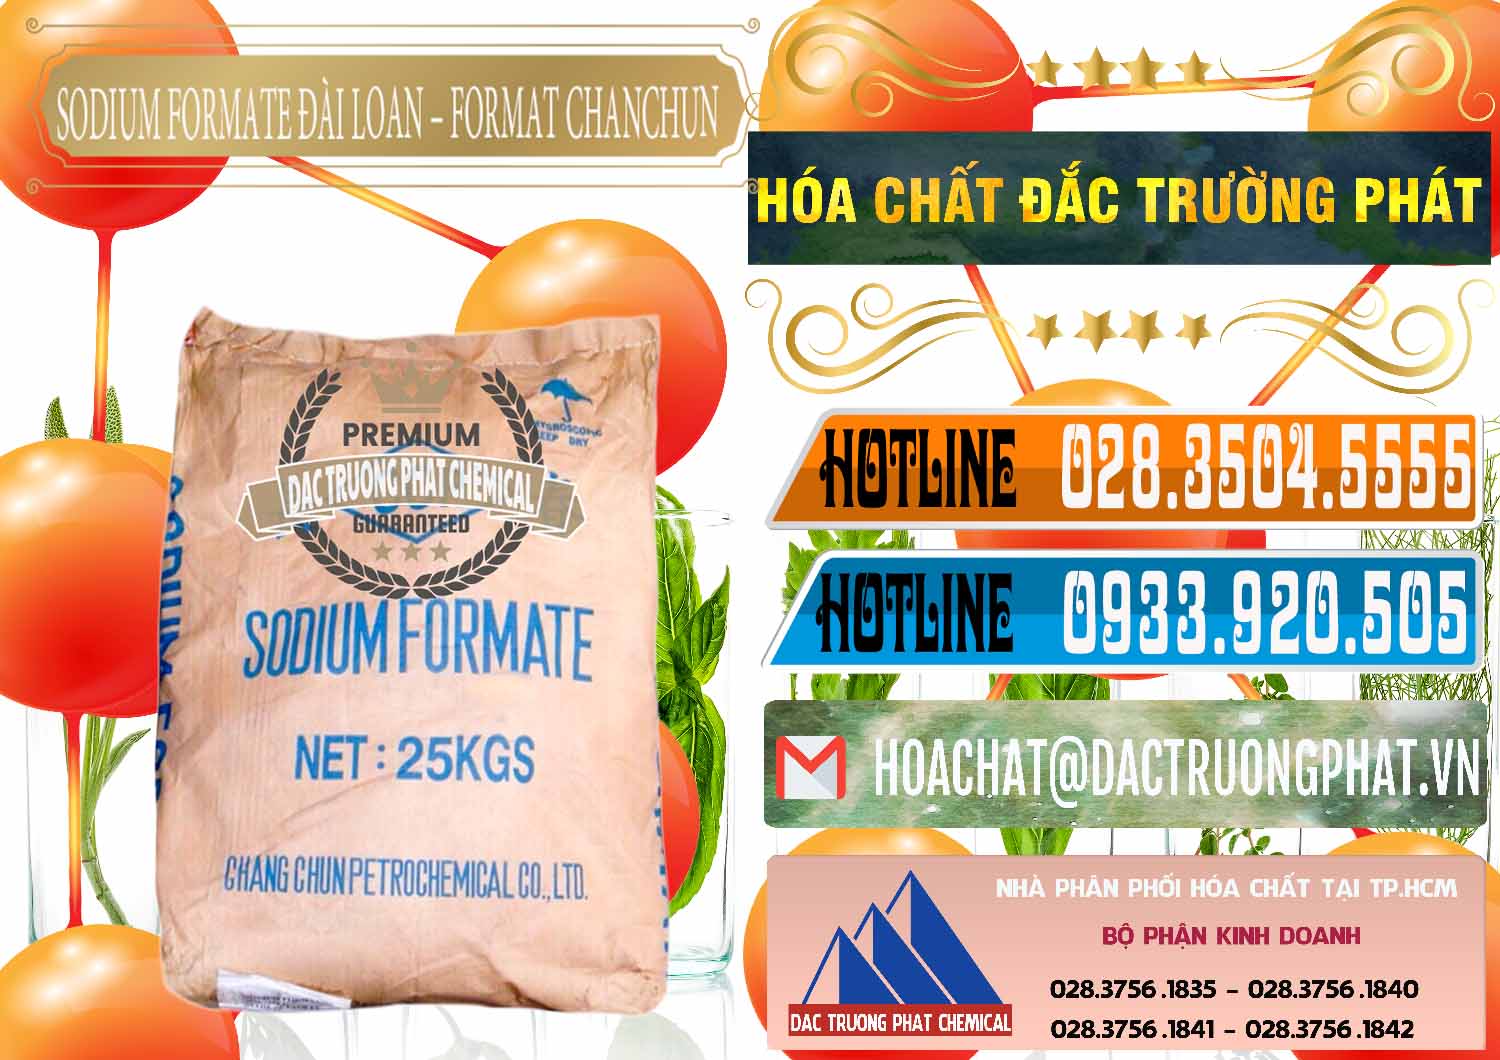 Đơn vị chuyên cung ứng ( bán ) Sodium Formate - Natri Format Đài Loan Taiwan - 0141 - Đơn vị nhập khẩu _ phân phối hóa chất tại TP.HCM - stmp.net